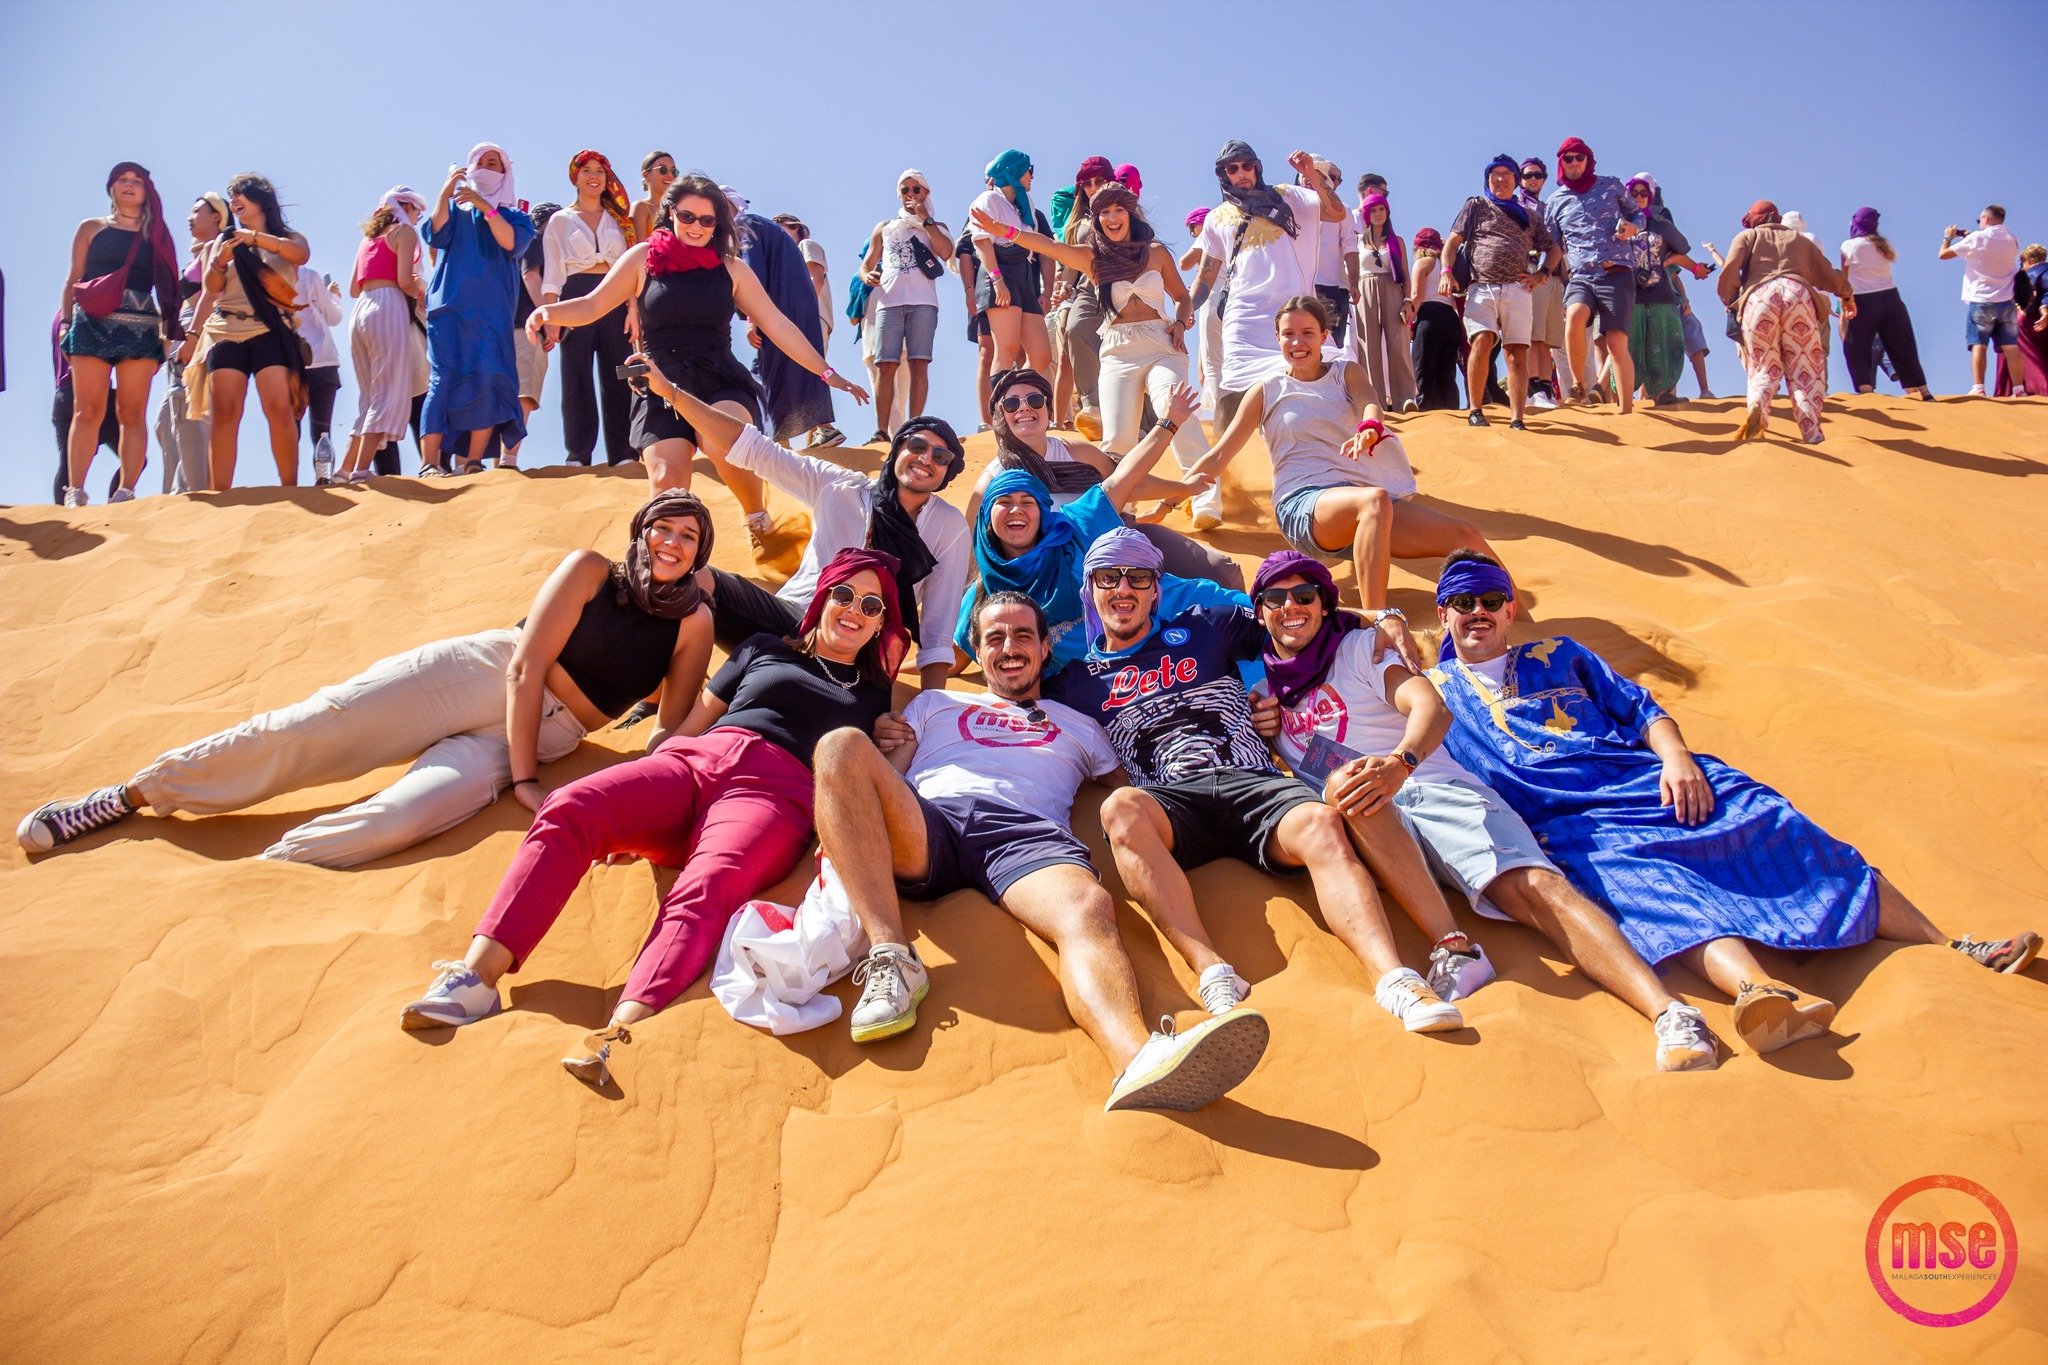 Grupo de turistas disfrutando en las dunas de arena del Sahara durante un viaje organizado por Malaga South Experiences. Los participantes están sentados y deslizándose por la pendiente de una gran duna, luciendo sonrisas y expresiones de alegría. Visten ropa casual y colorida, algunos con pañuelos tradicionales en la cabeza, bajo un cielo azul claro y sin nubes. La vitalidad y el ambiente festivo se reflejan en sus posturas relajadas y brazos extendidos.